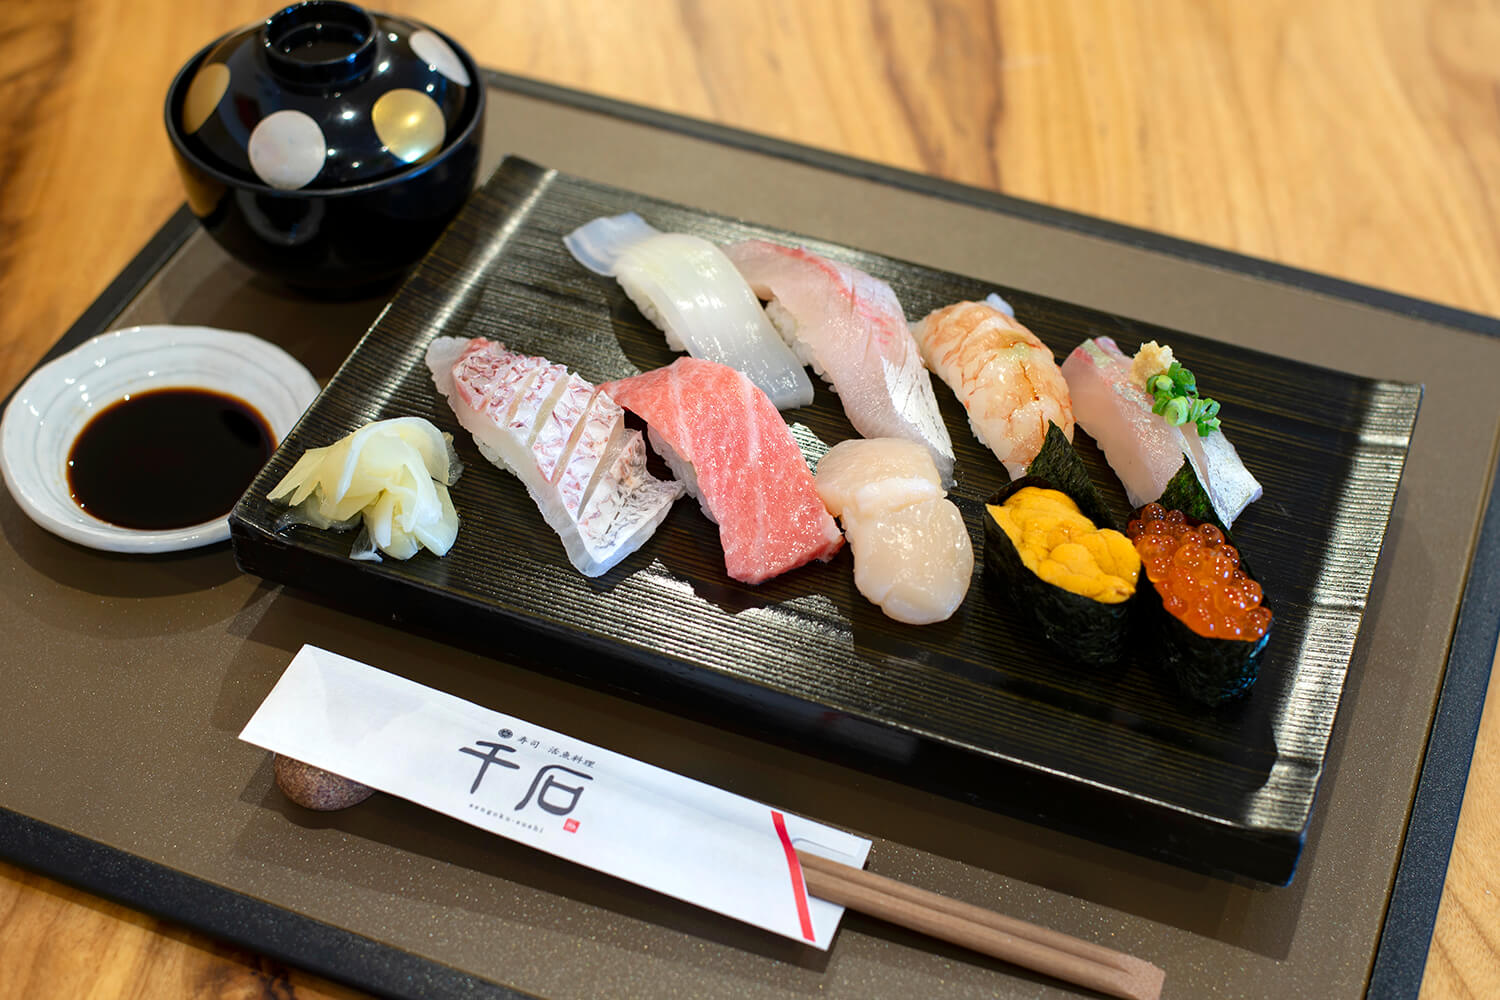 「特握り」2,700円。鮮度に徹底してこだわる寿司は一貫一貫が至福の美味